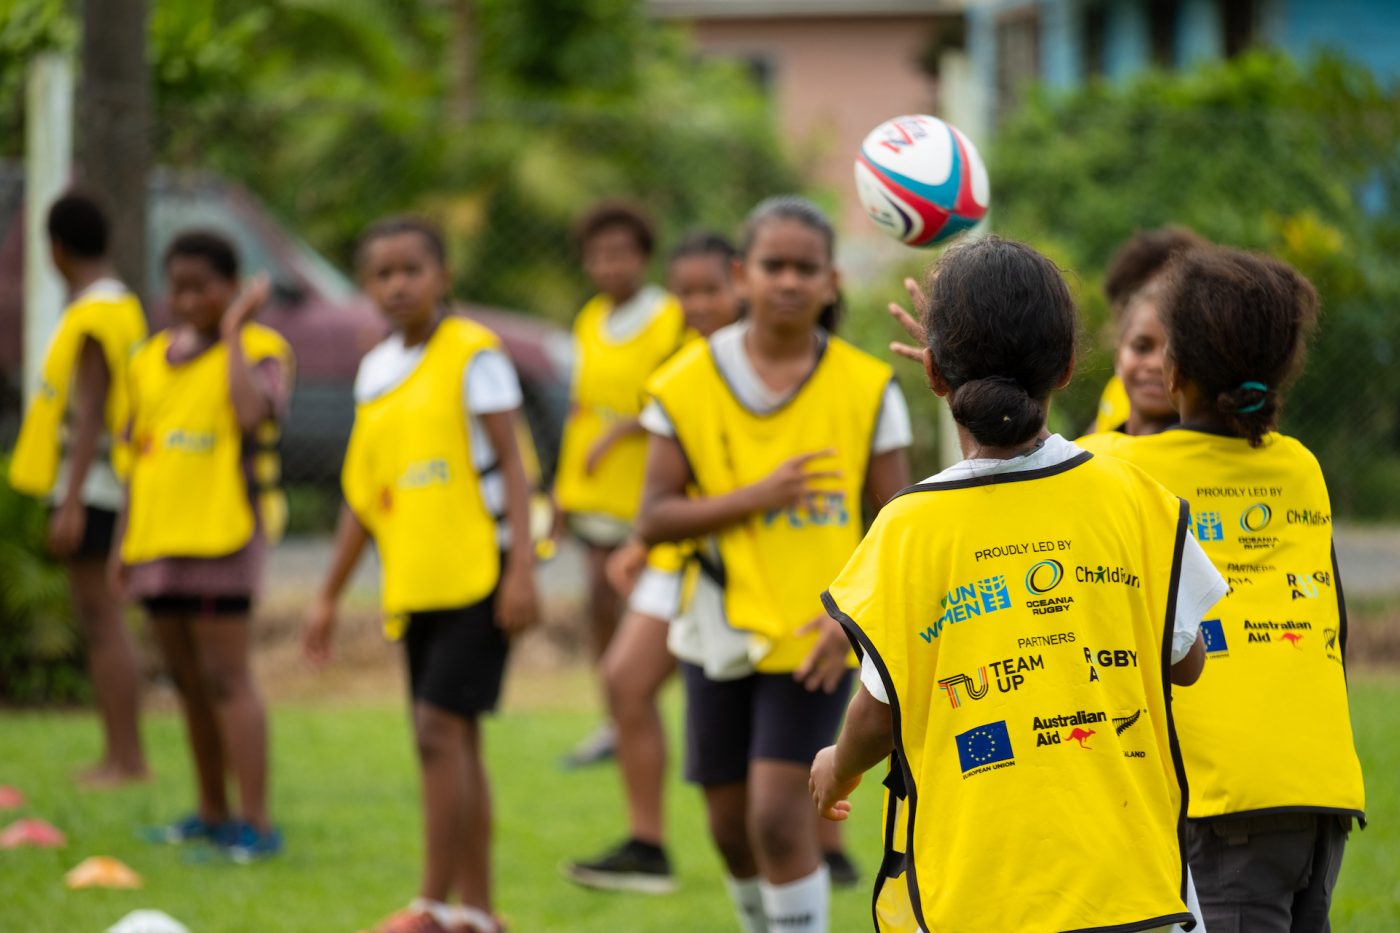 ChildFund Sport for Development